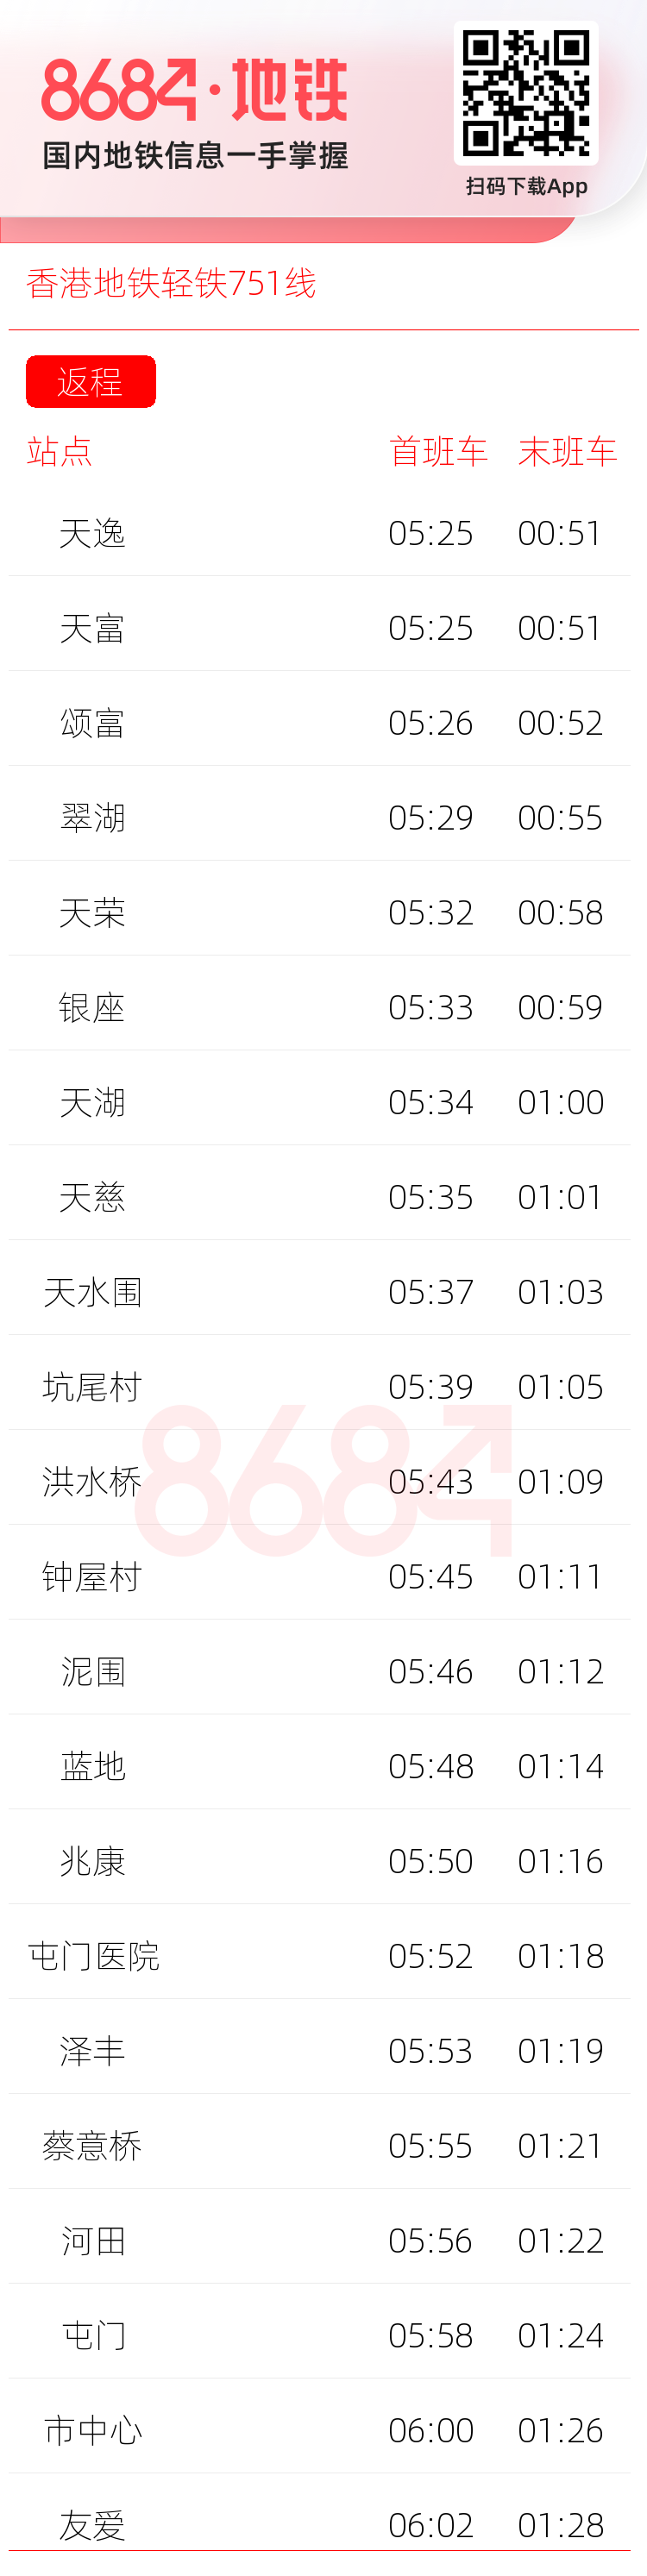 香港地铁轻铁751线运营时间表